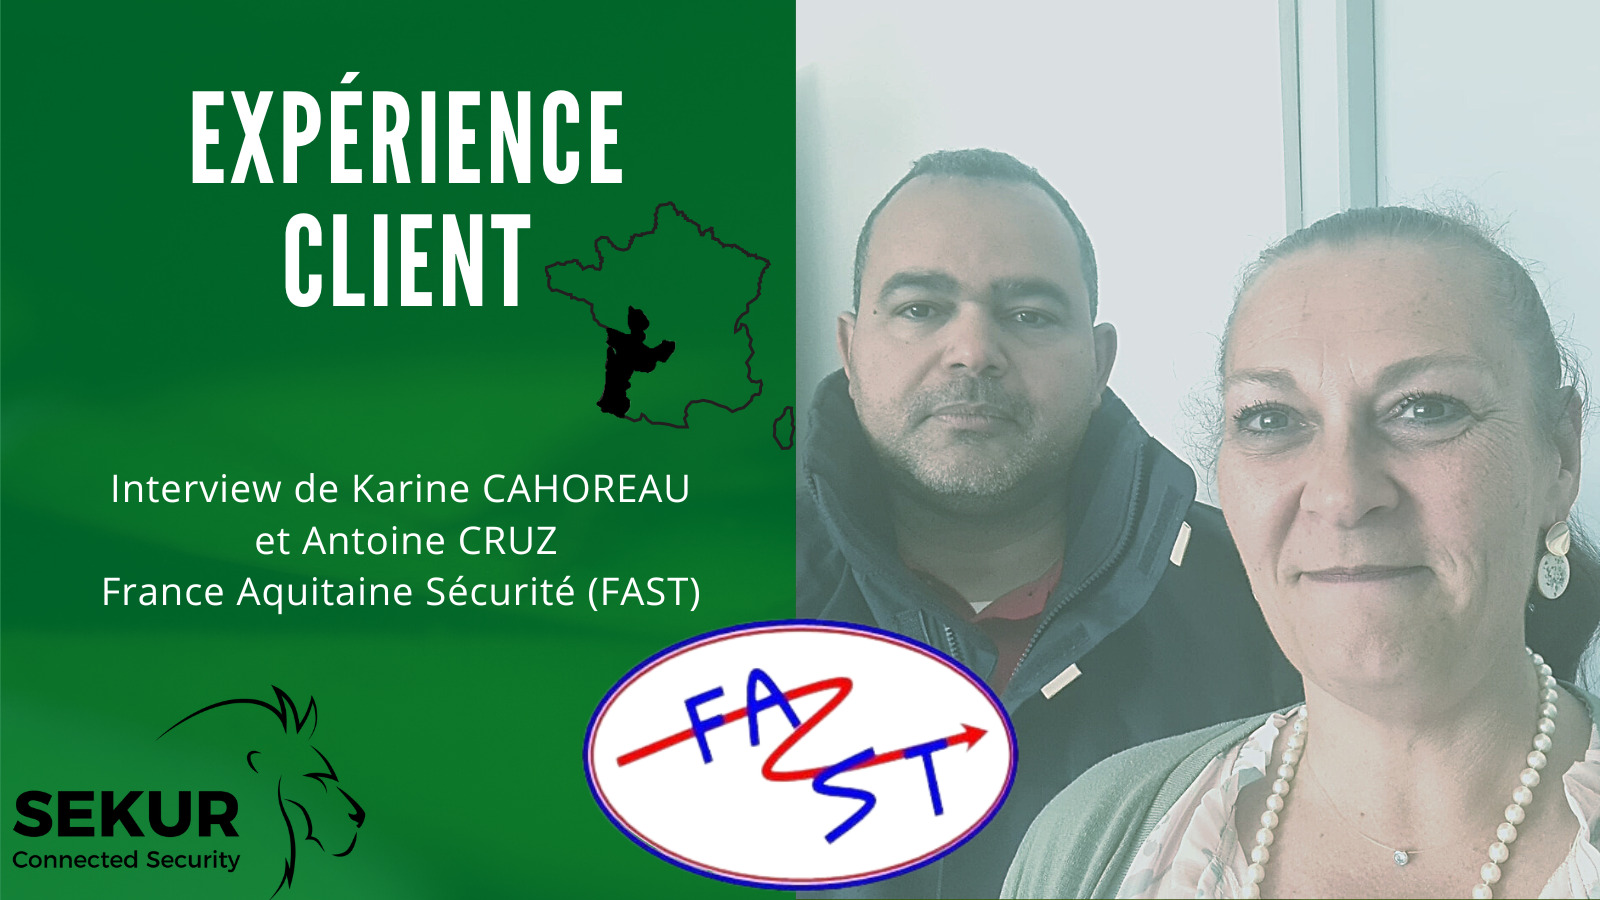 Retour d’expérience Client sur SEKUR® – France Aquitaine Sécurité (FAST)